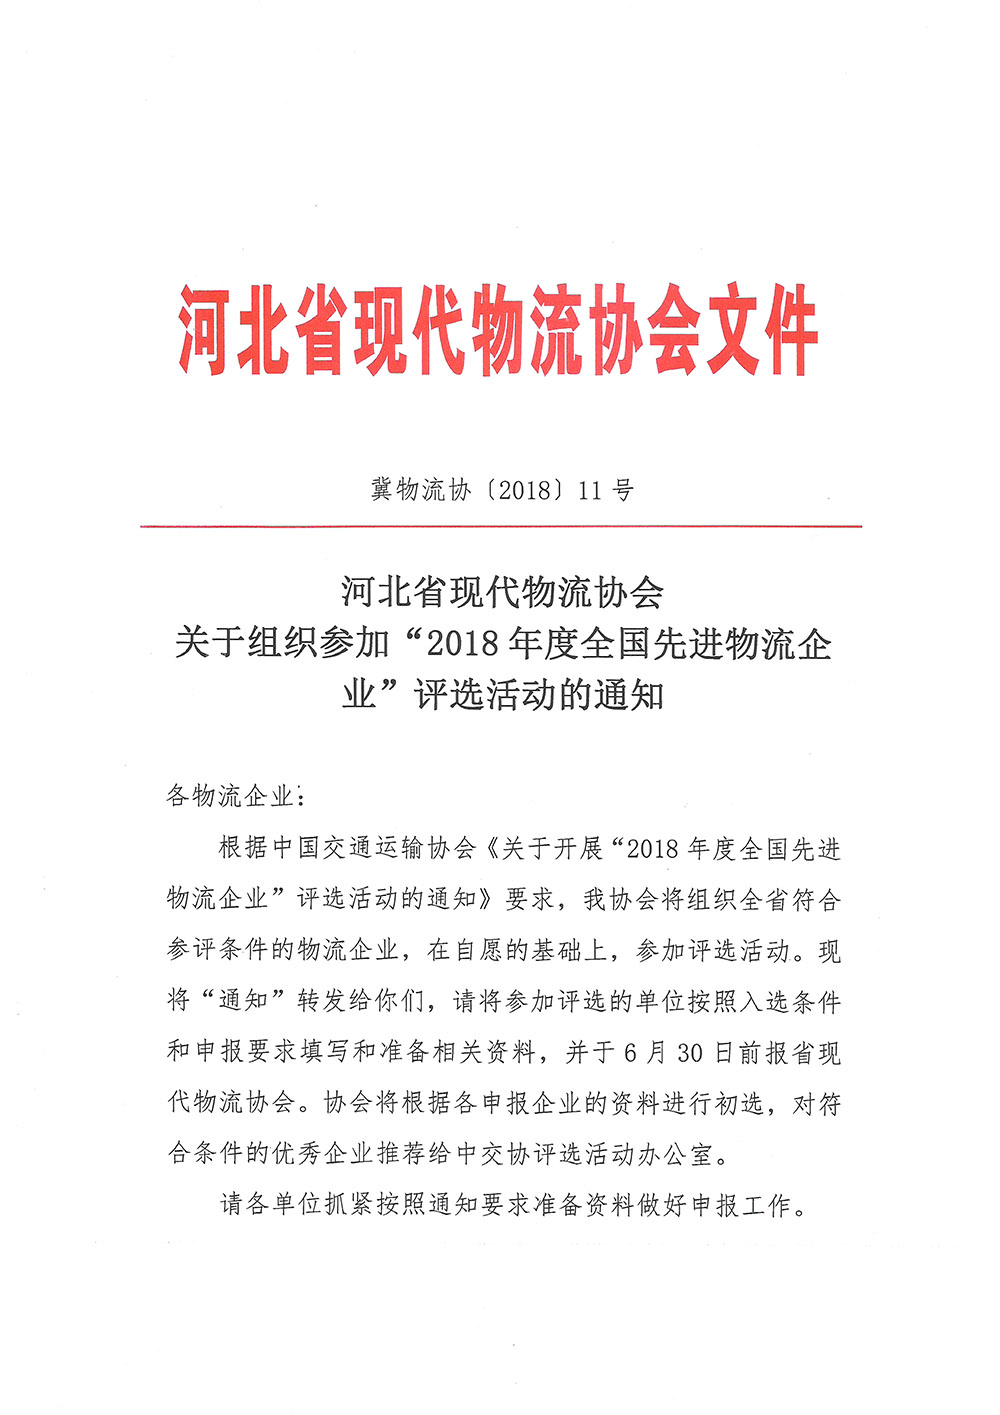 河北省现代物流协会关于组织参加“2018年度全国先进物流企业”评选活动的通知1